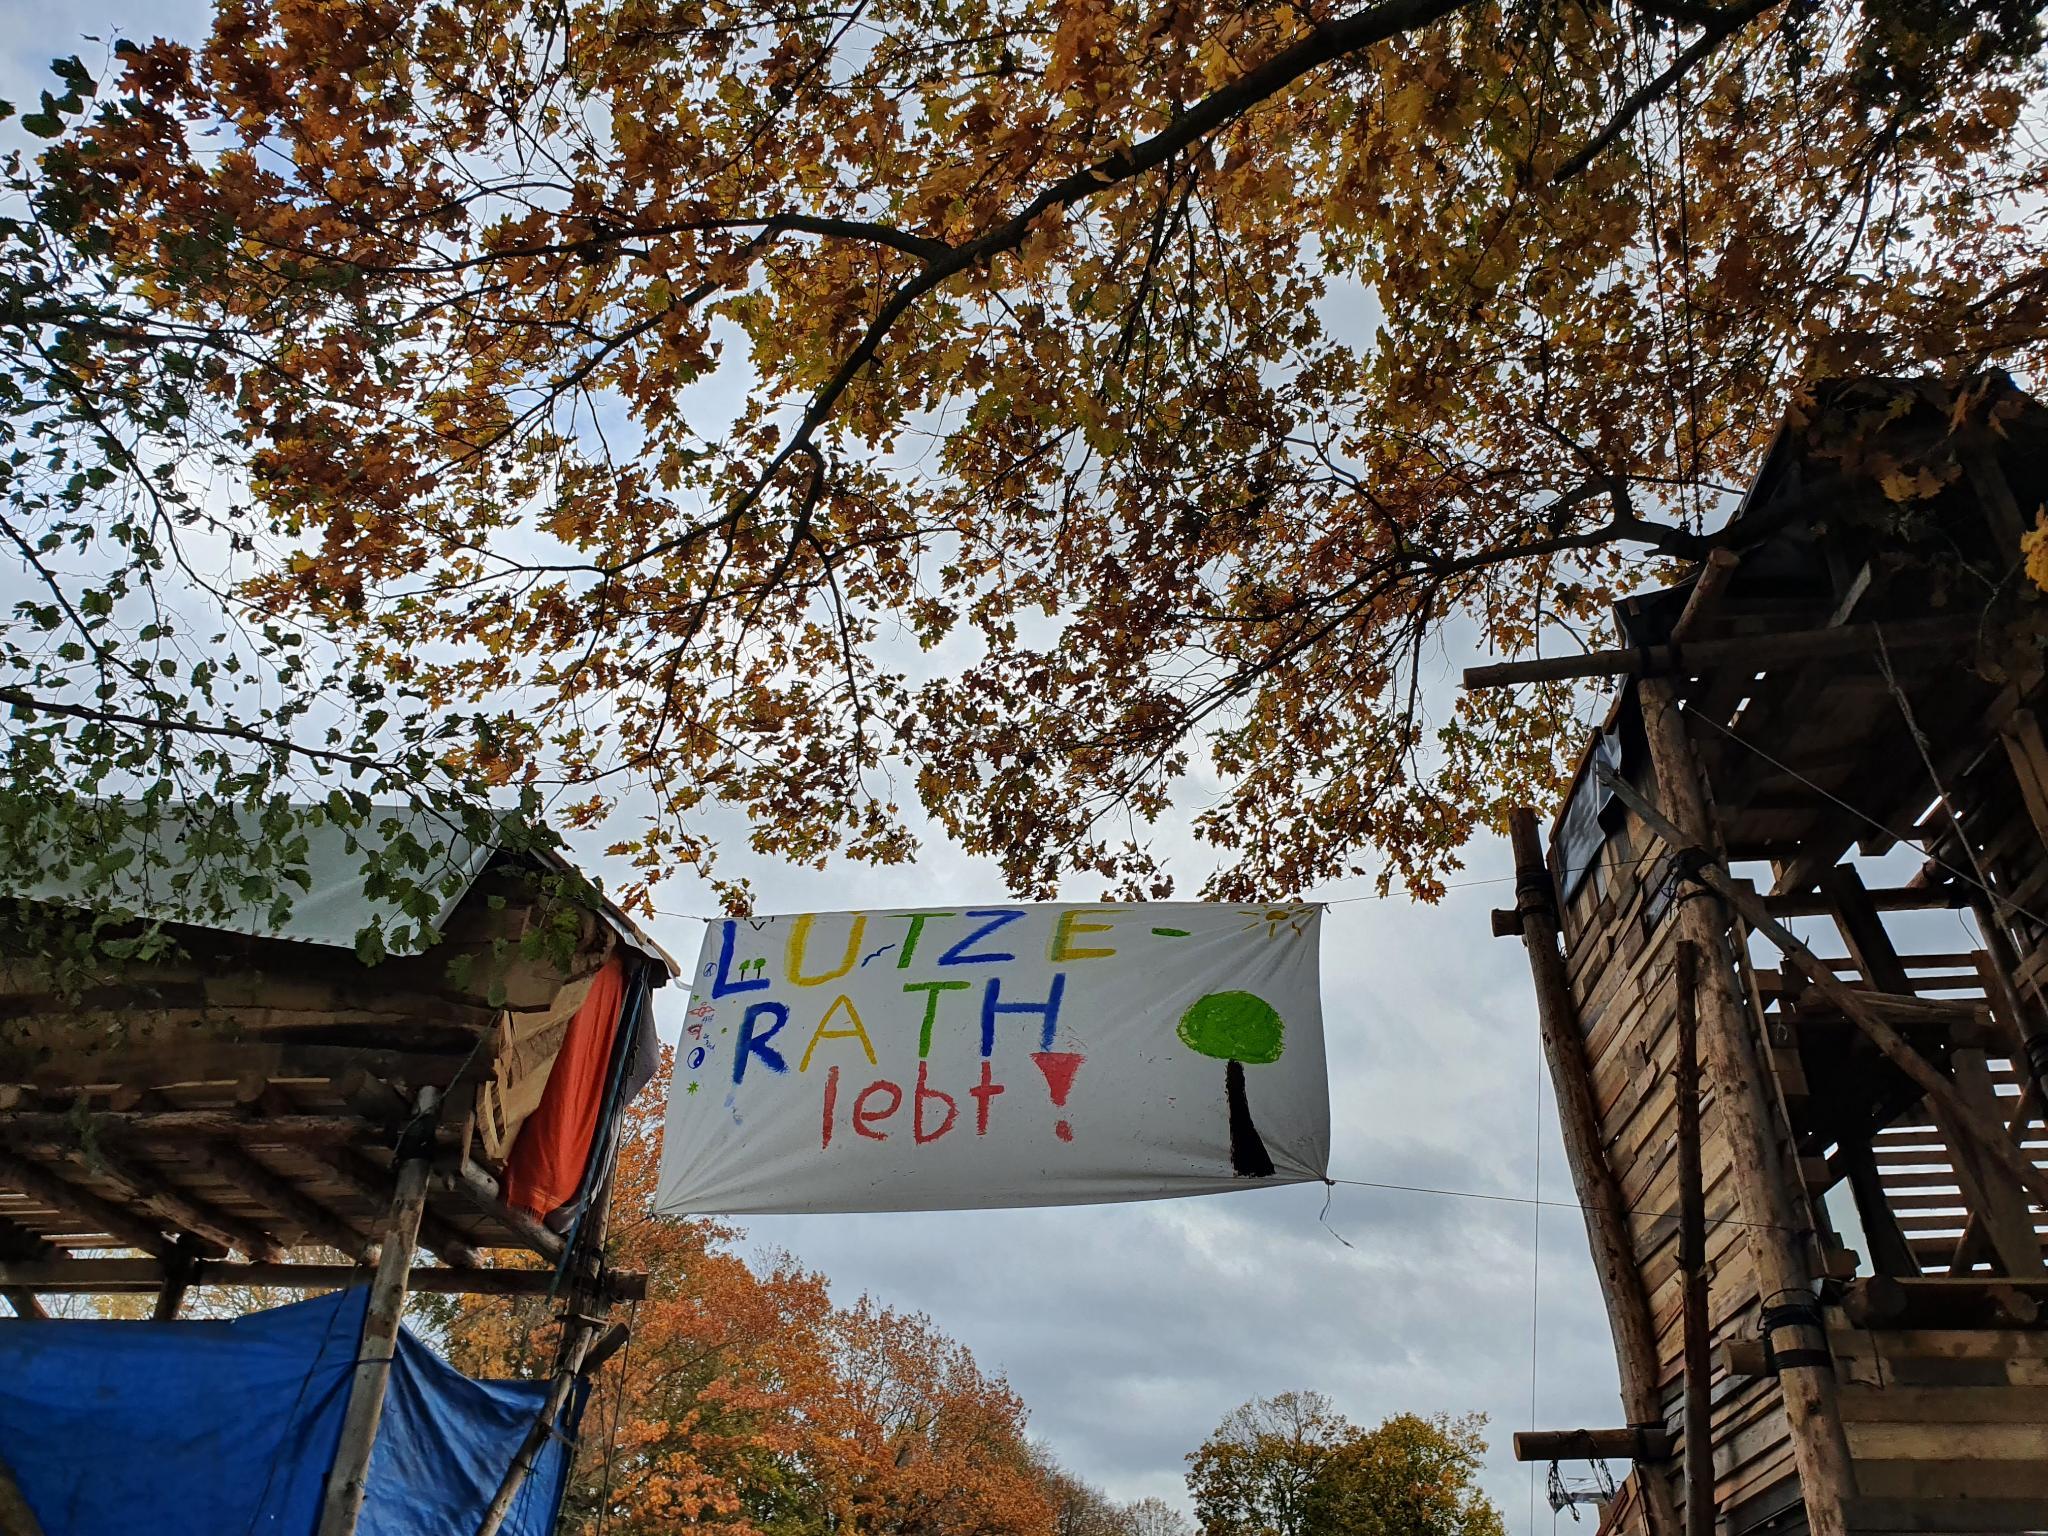 Zwischen zwei Protestcamphütten ist ein Transparent mit dem Slogan "Lützerath lebt!" aufgespannt.